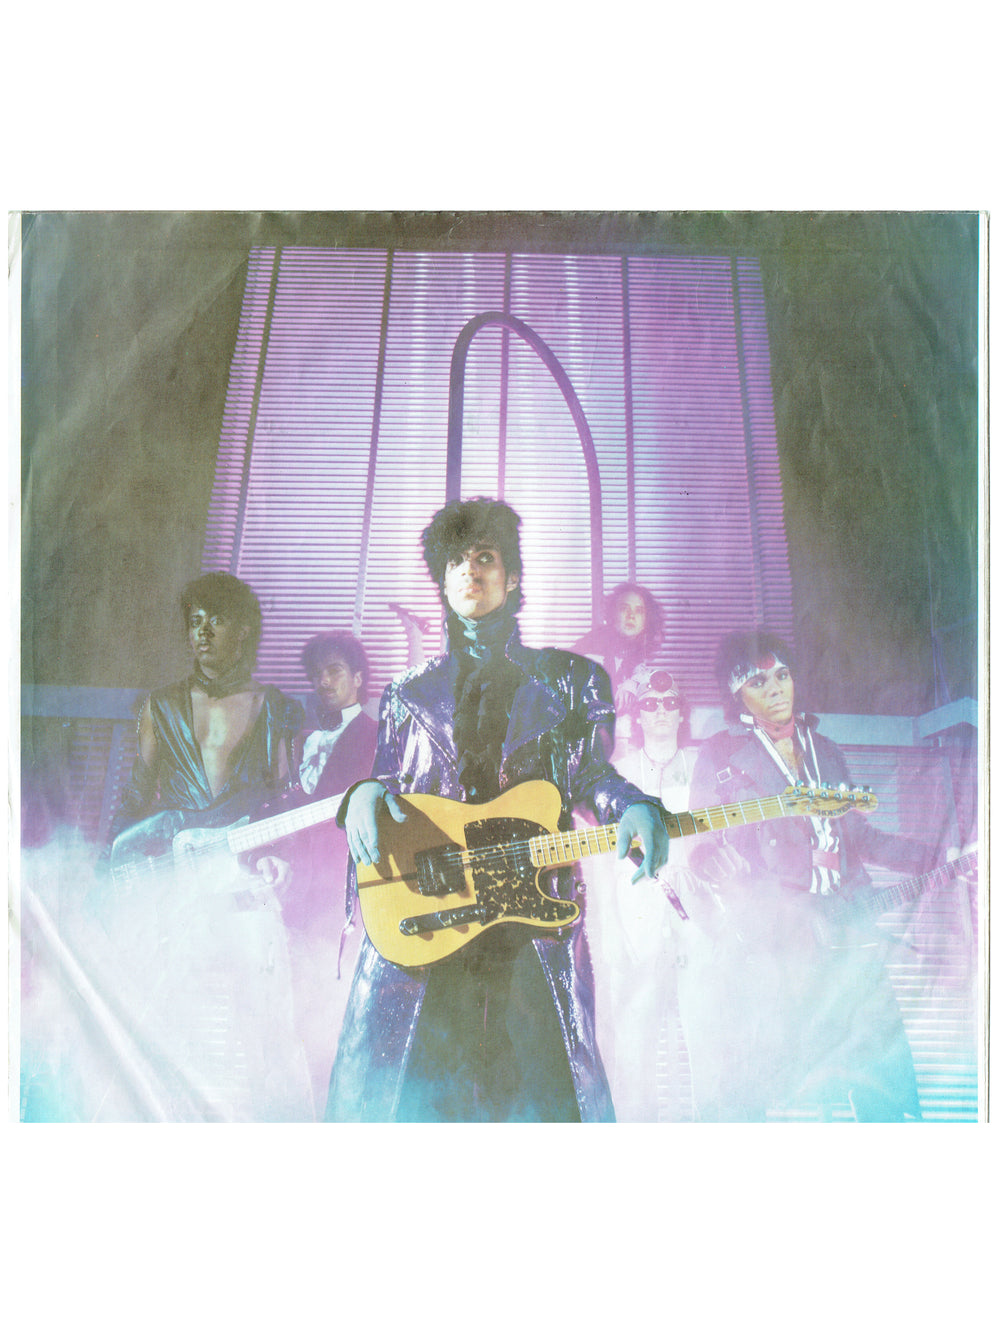 Prince – 1999 Double Vinyl LP x 2 Album EU Hype Preloved: 1982